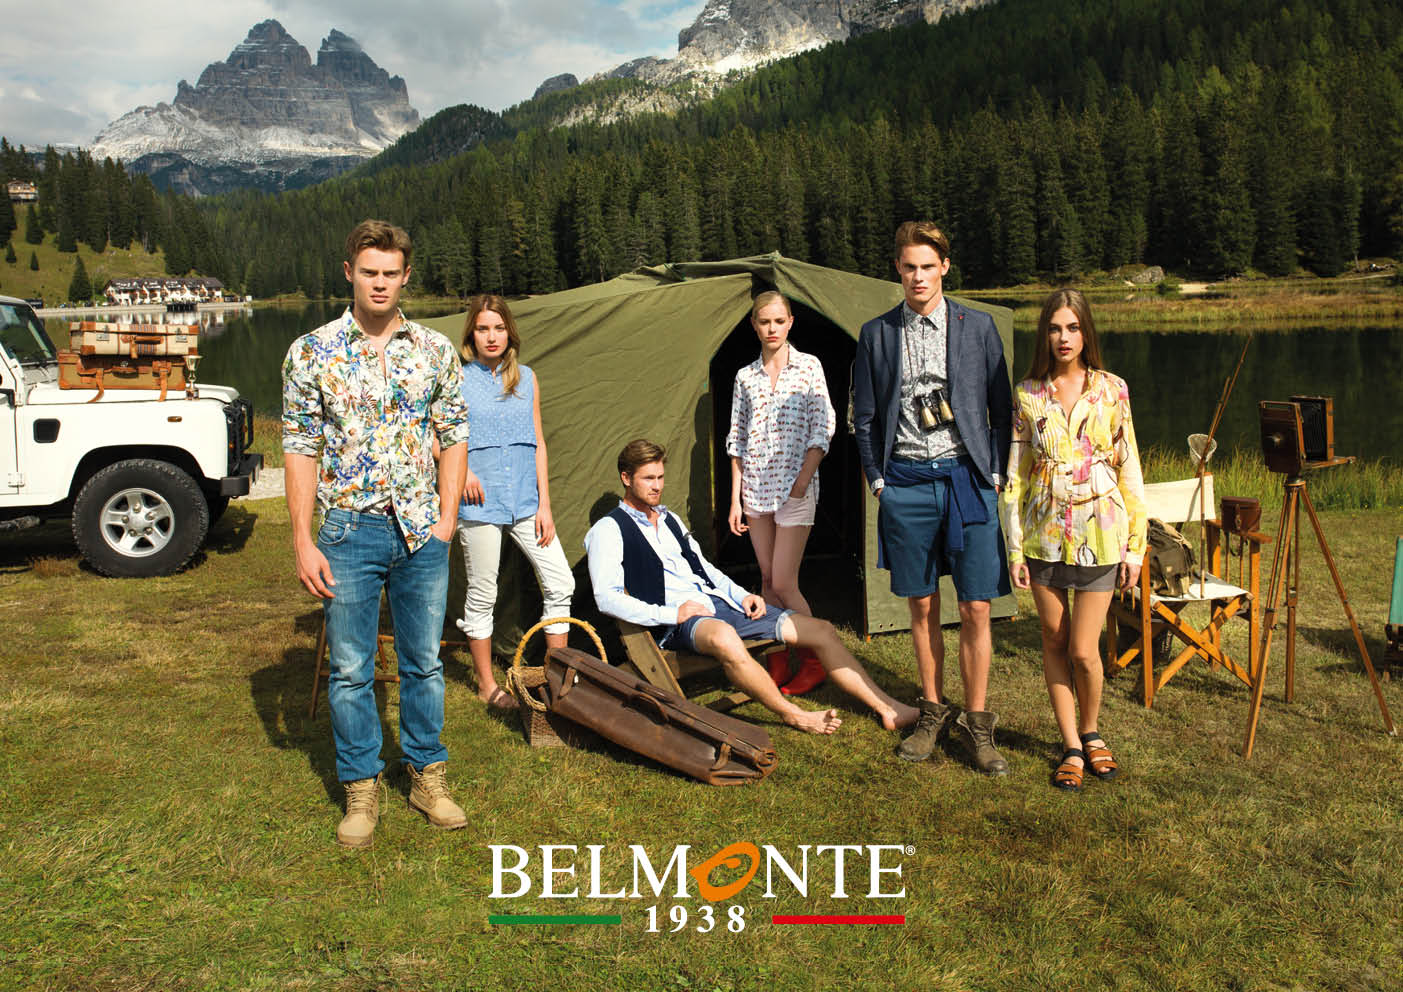 Belmonte campagna pubblicitaria primavera estate 2016: lo stile sporty chic, le foto